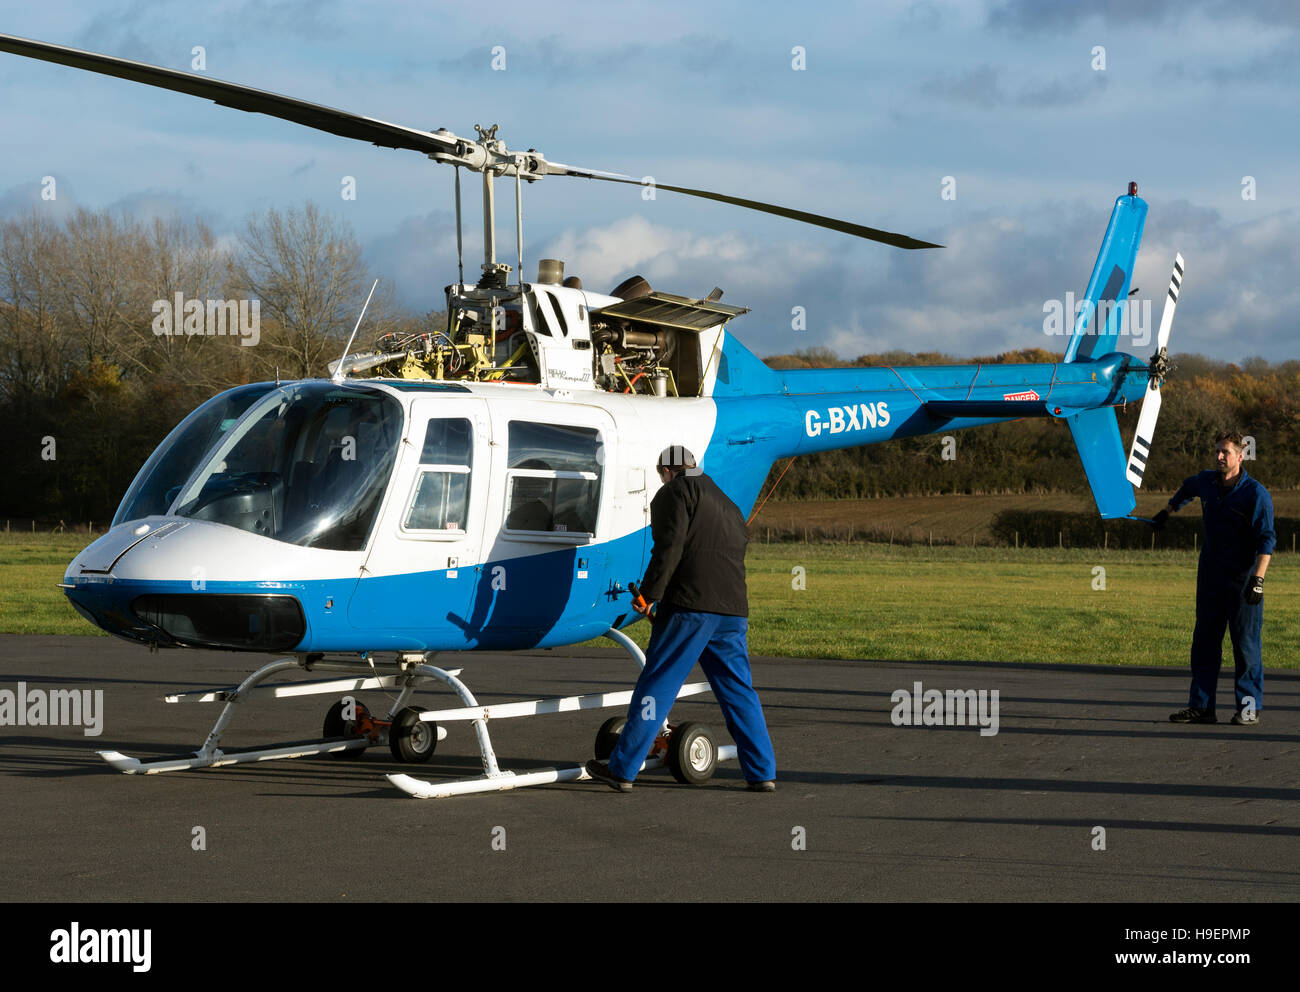 Hélicoptère Bell 206B Jet Ranger III à l'aérodrome de Turanton, Buckinghamshire, Royaume-Uni (G-BXNS) Banque D'Images